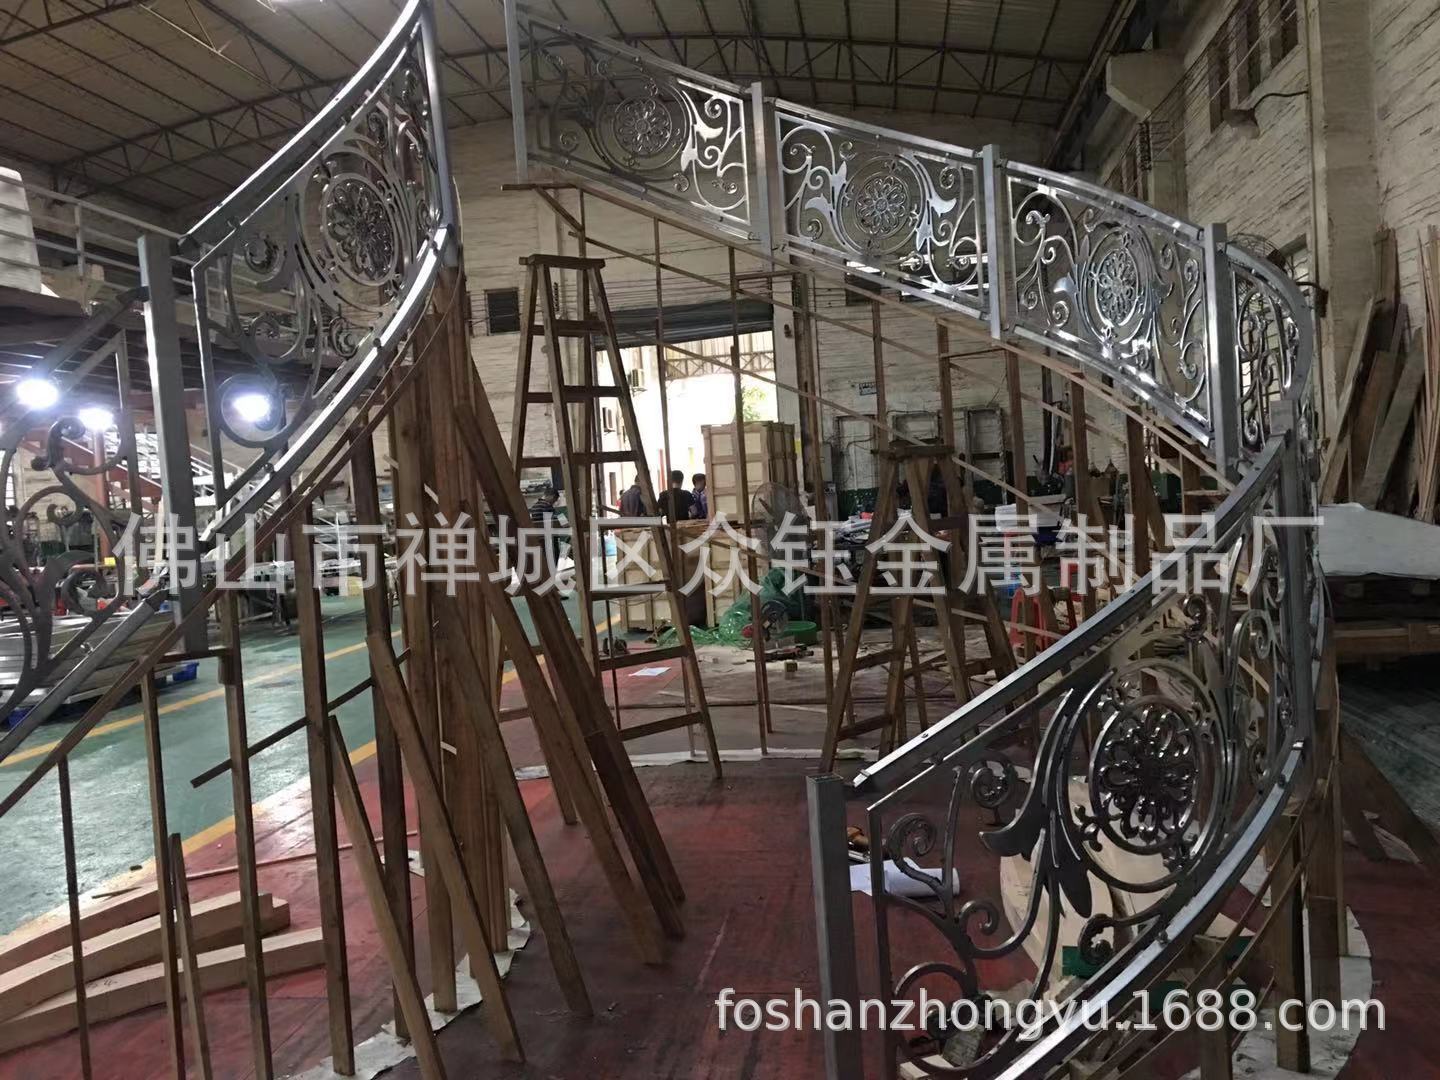 贵族世家的楼梯铜艺浮雕镀金护栏立体浮雕刻24K金护栏门第象征示例图20